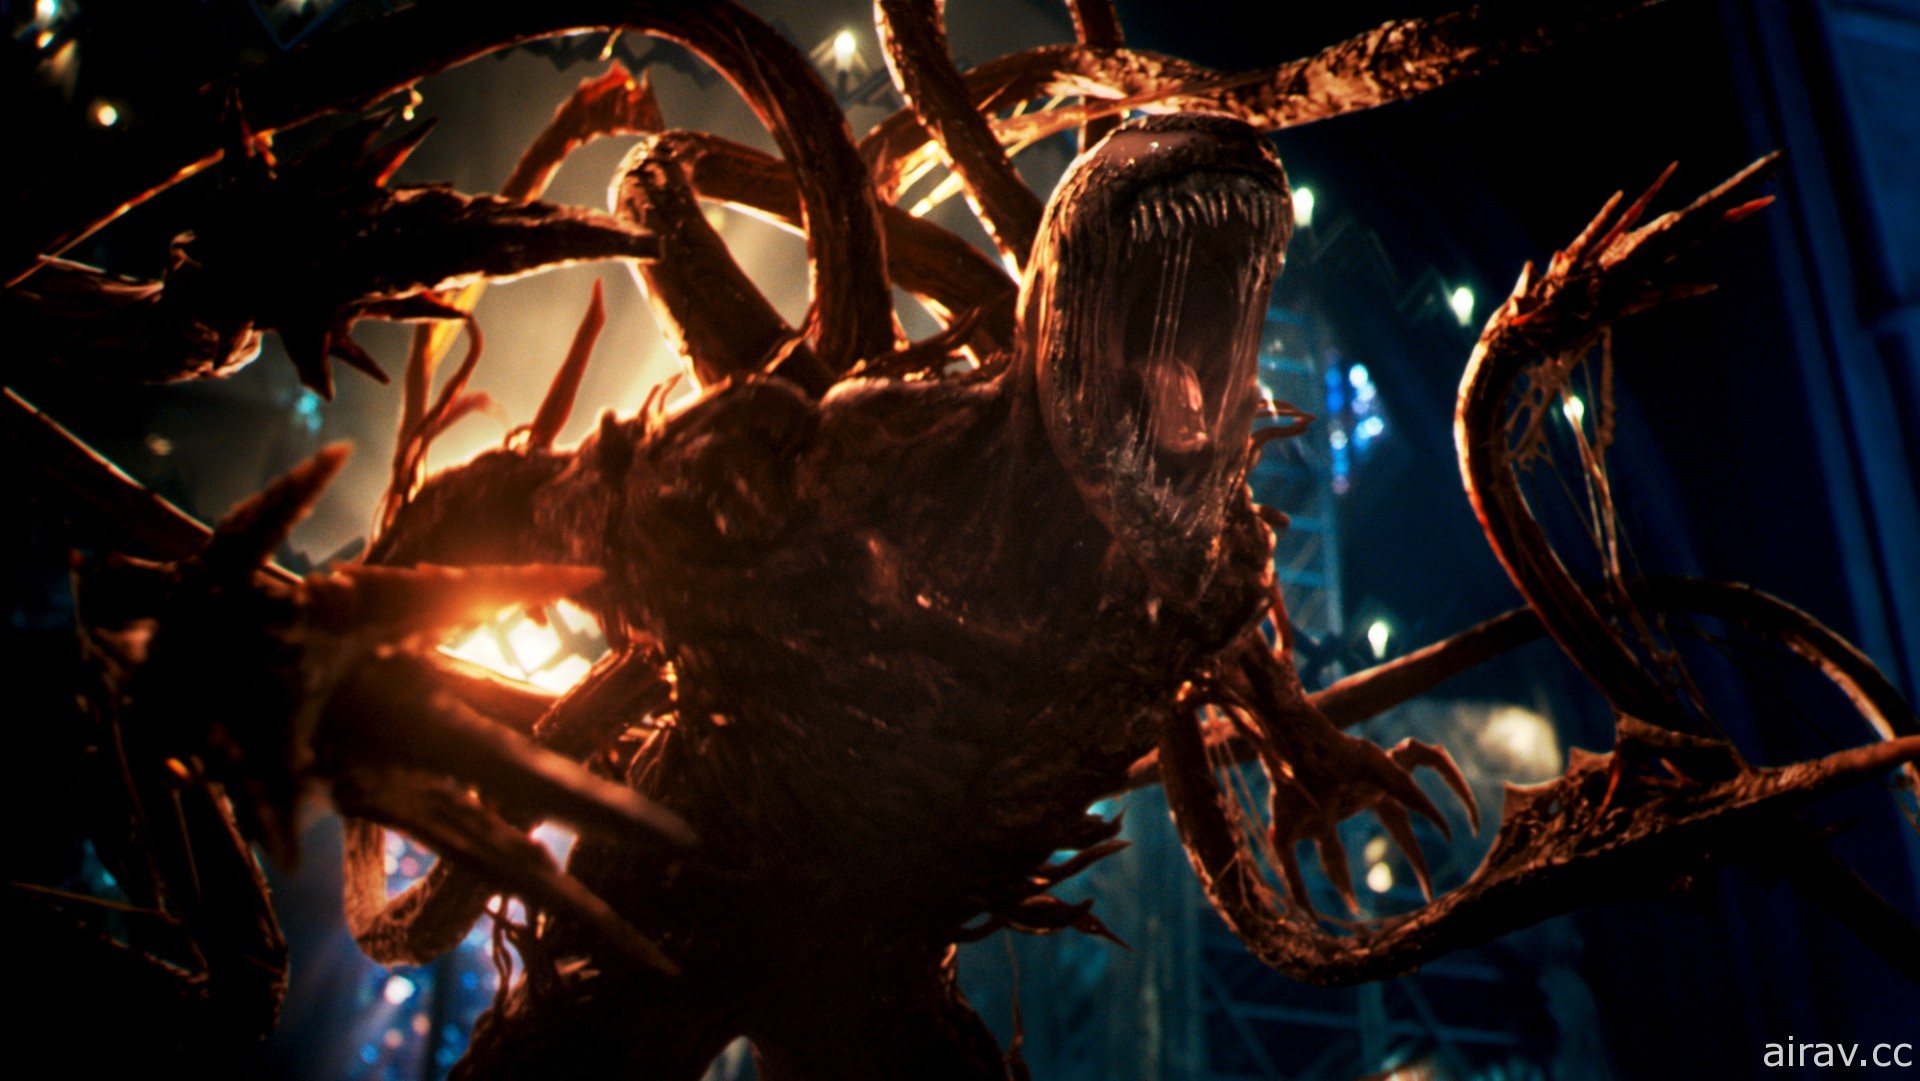 《猛毒 2：血蜘蛛》釋出正式預告影片 9 月 16 將在台上映